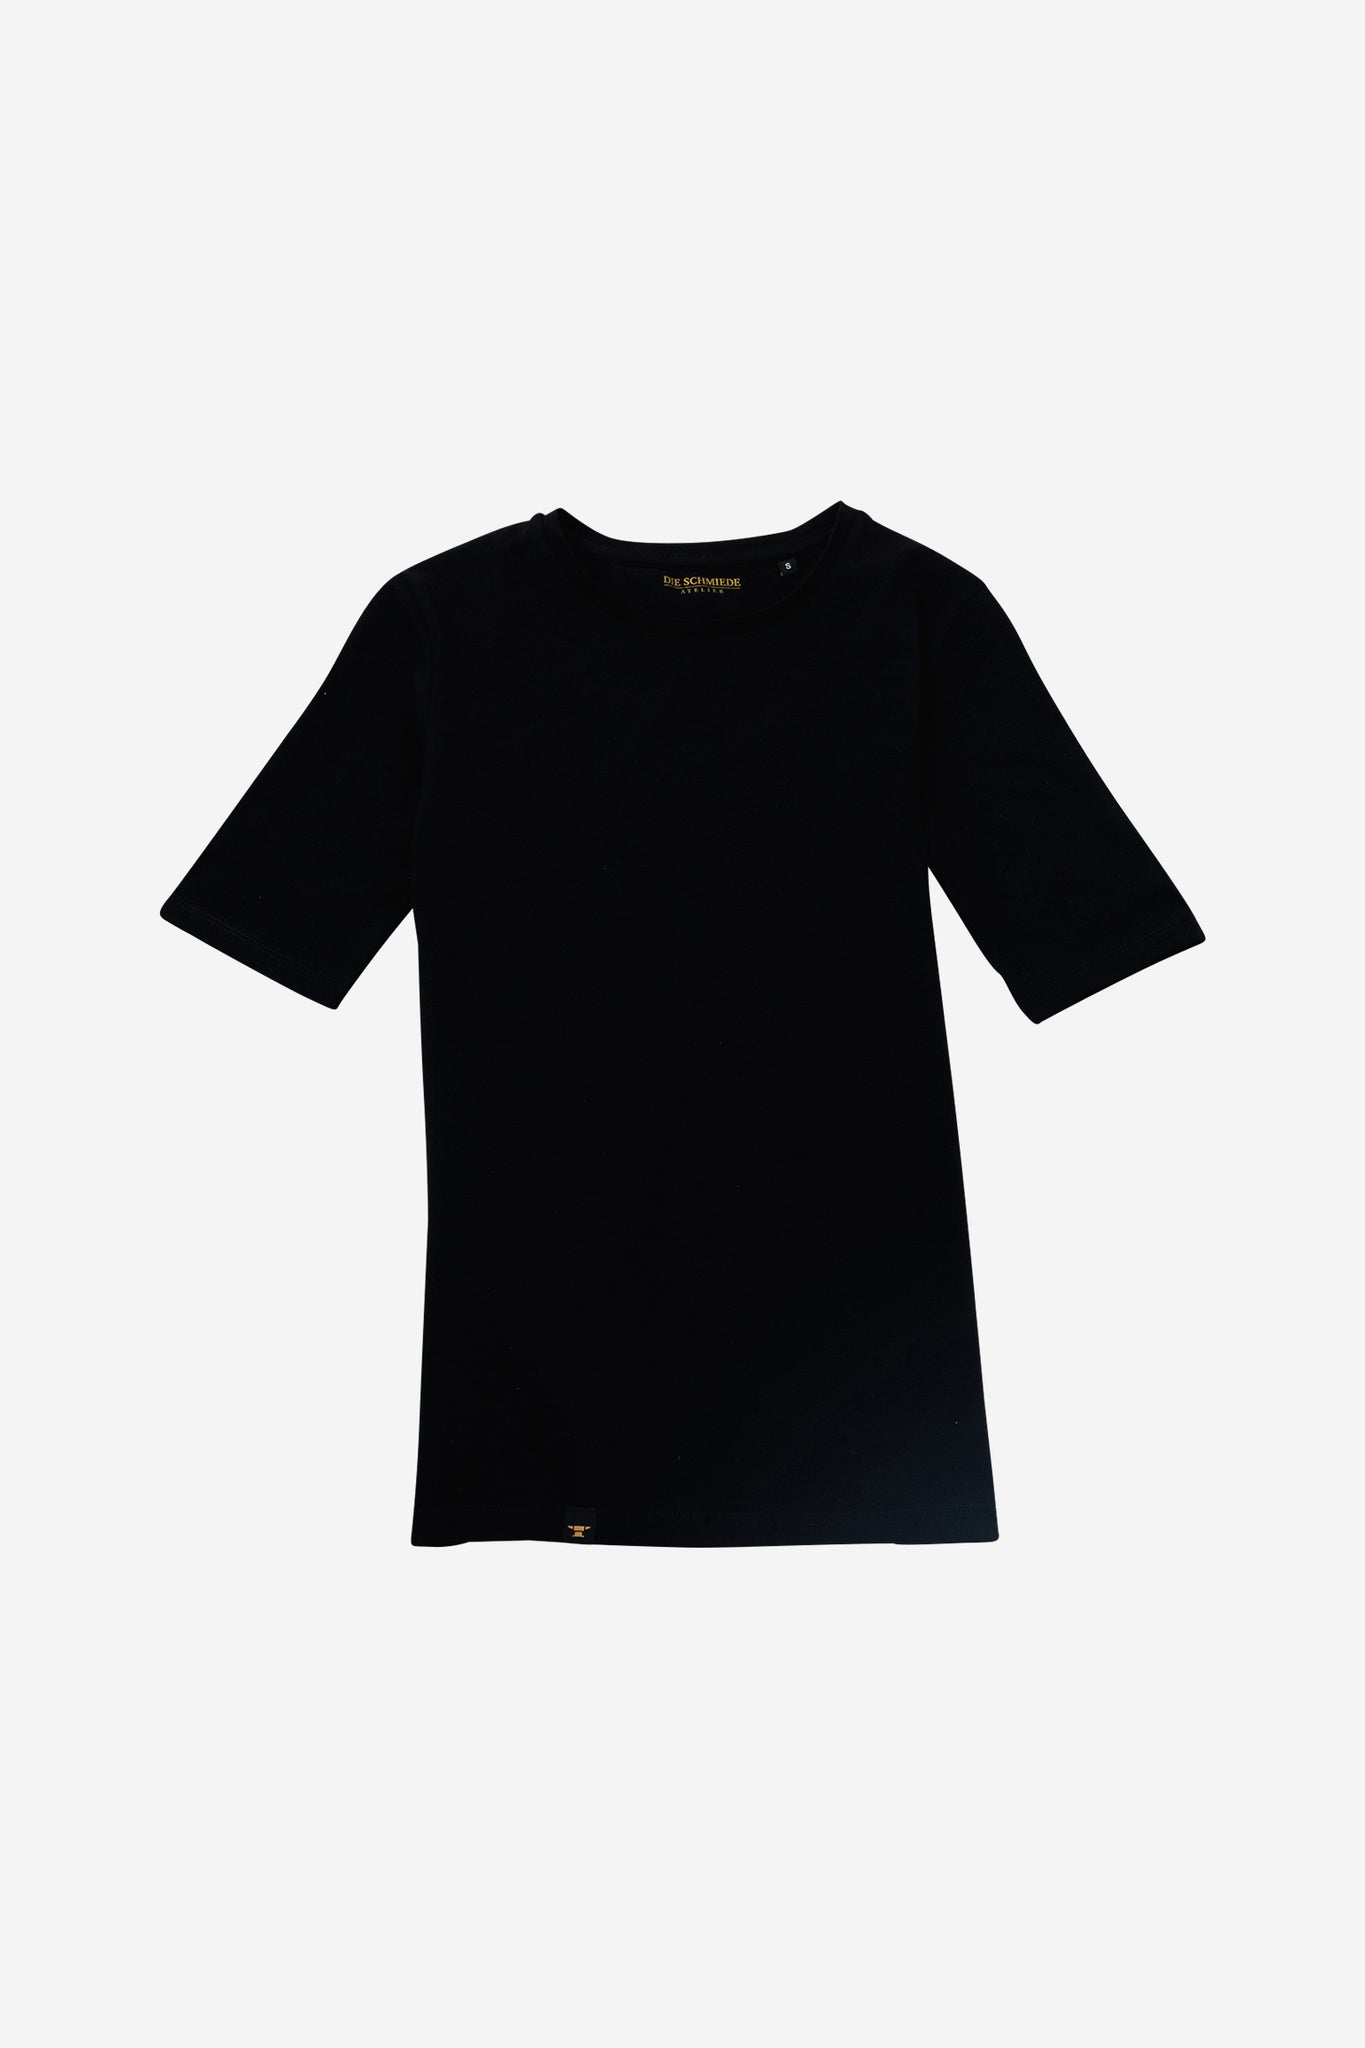 DIE SCHMIEDE Damen T-Shirt schwarz aus Baumwolle, eng anliegend und talliert, etwas längere Ärmel und Rundhals Ausschnitt